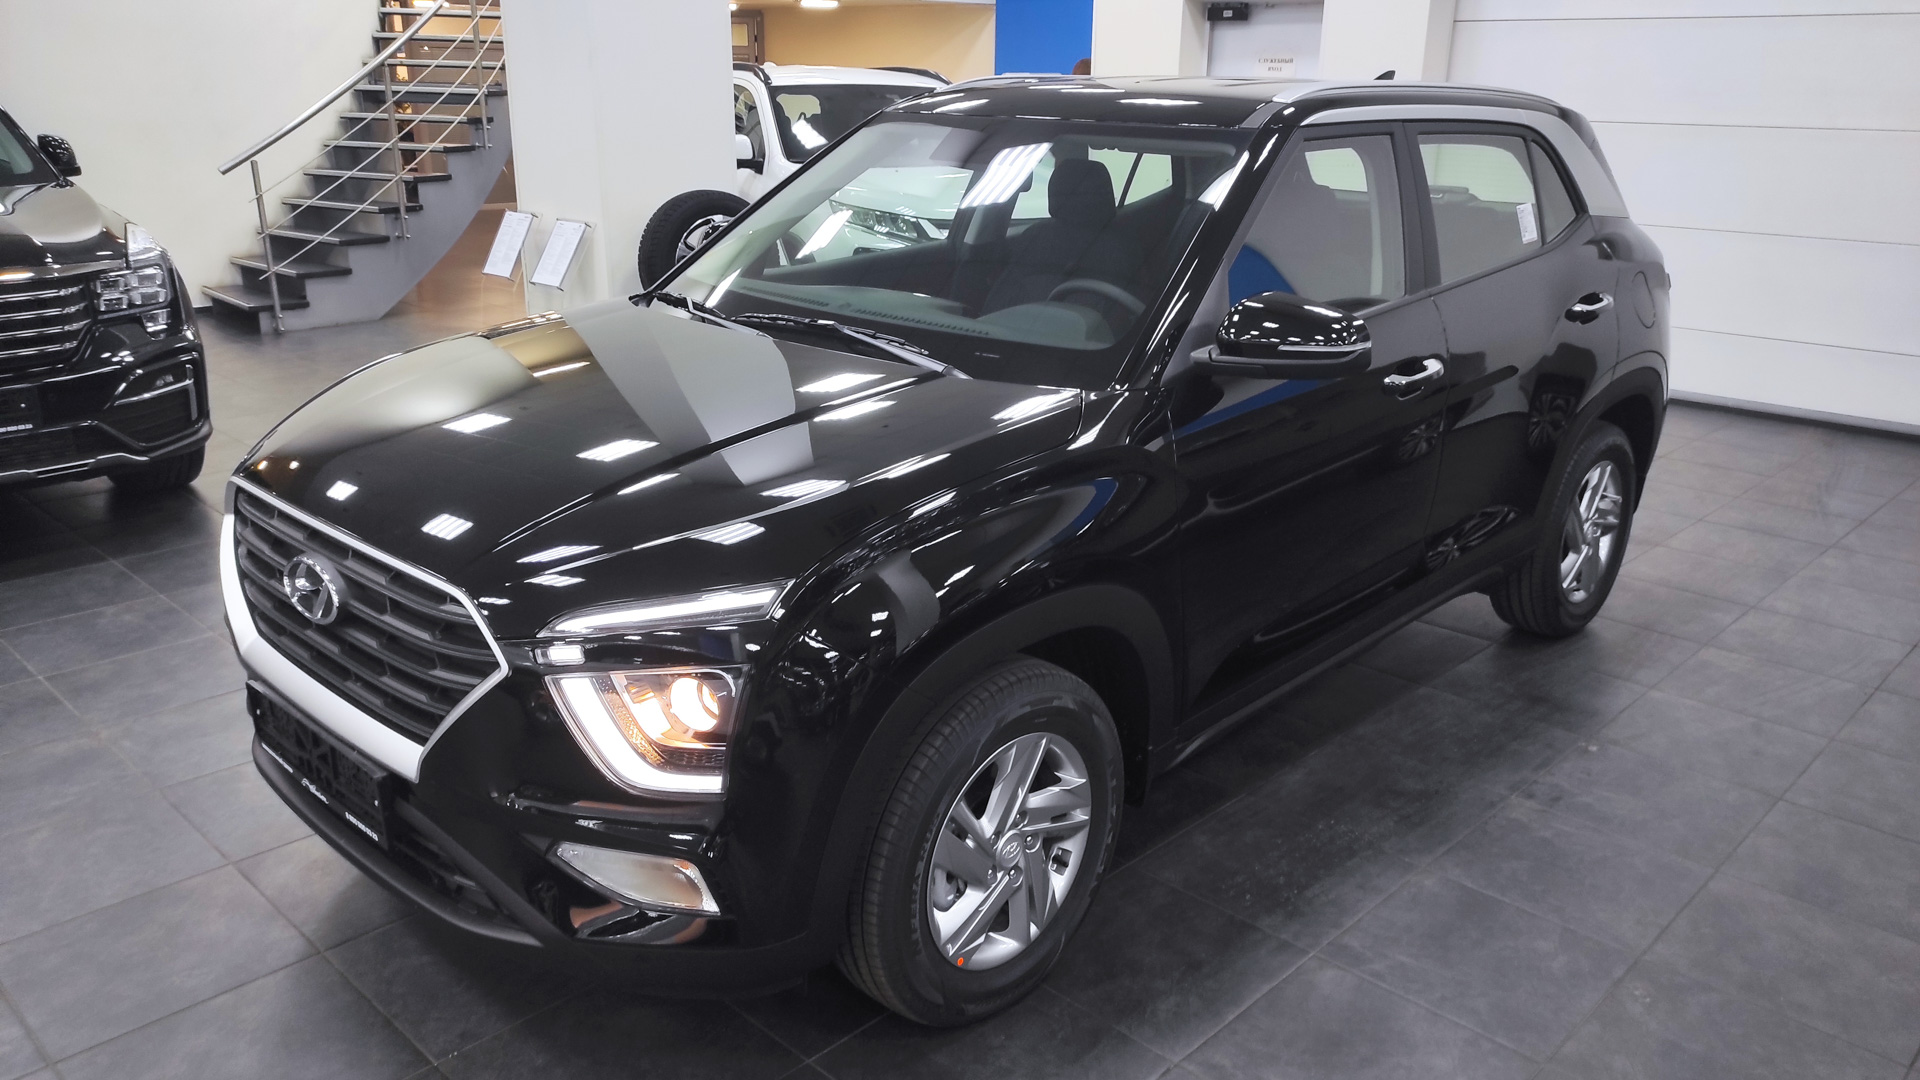 Новая Hyundai Creta 2022 серебристый цвет